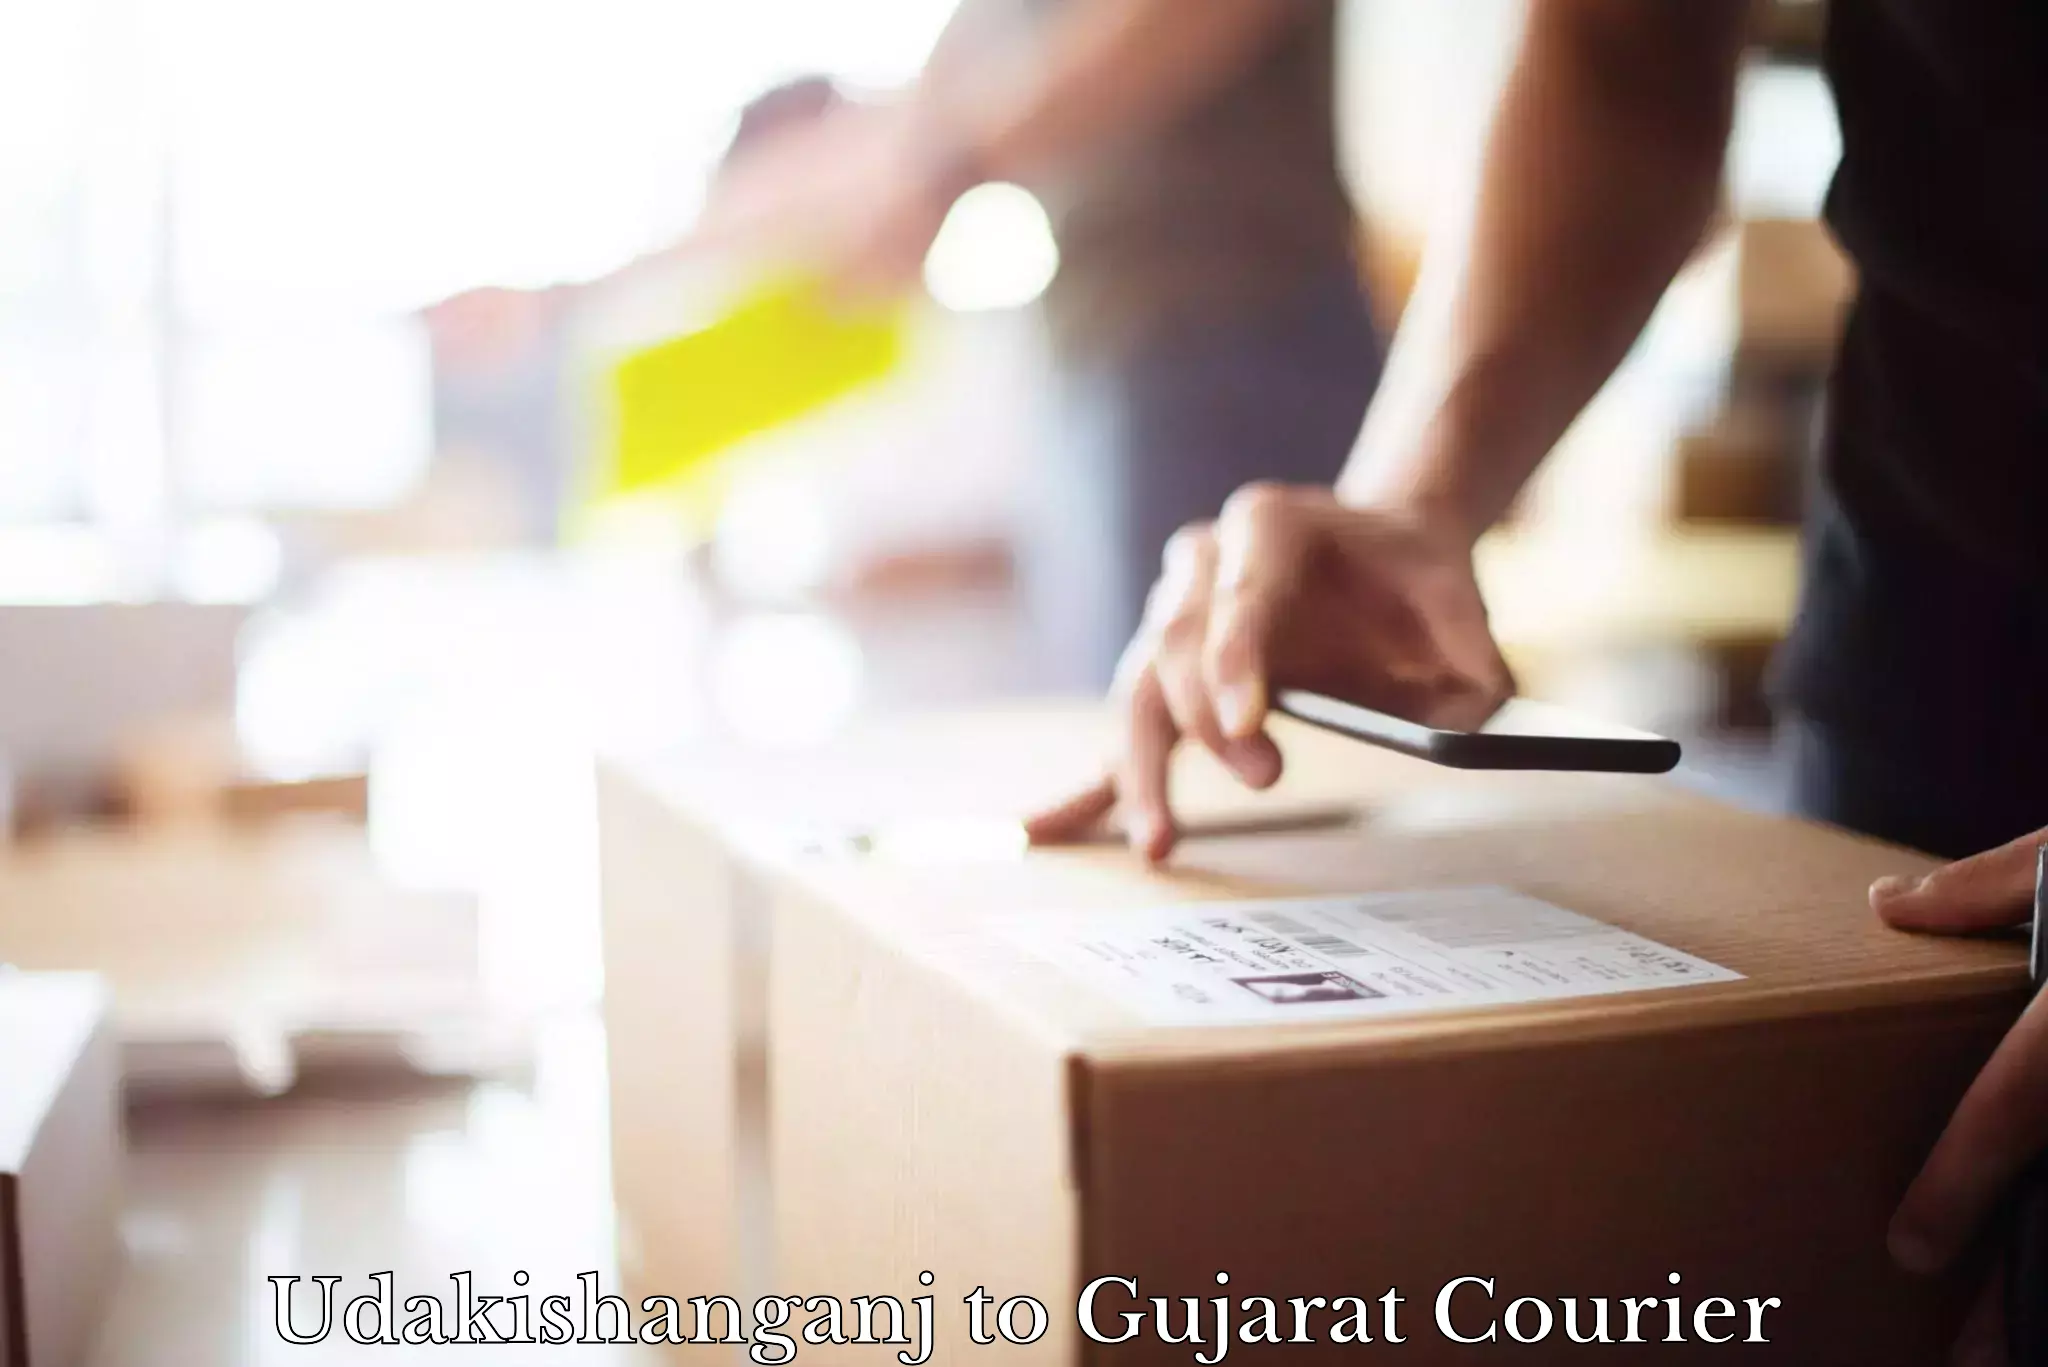 Reliable delivery network Udakishanganj to Gujarat